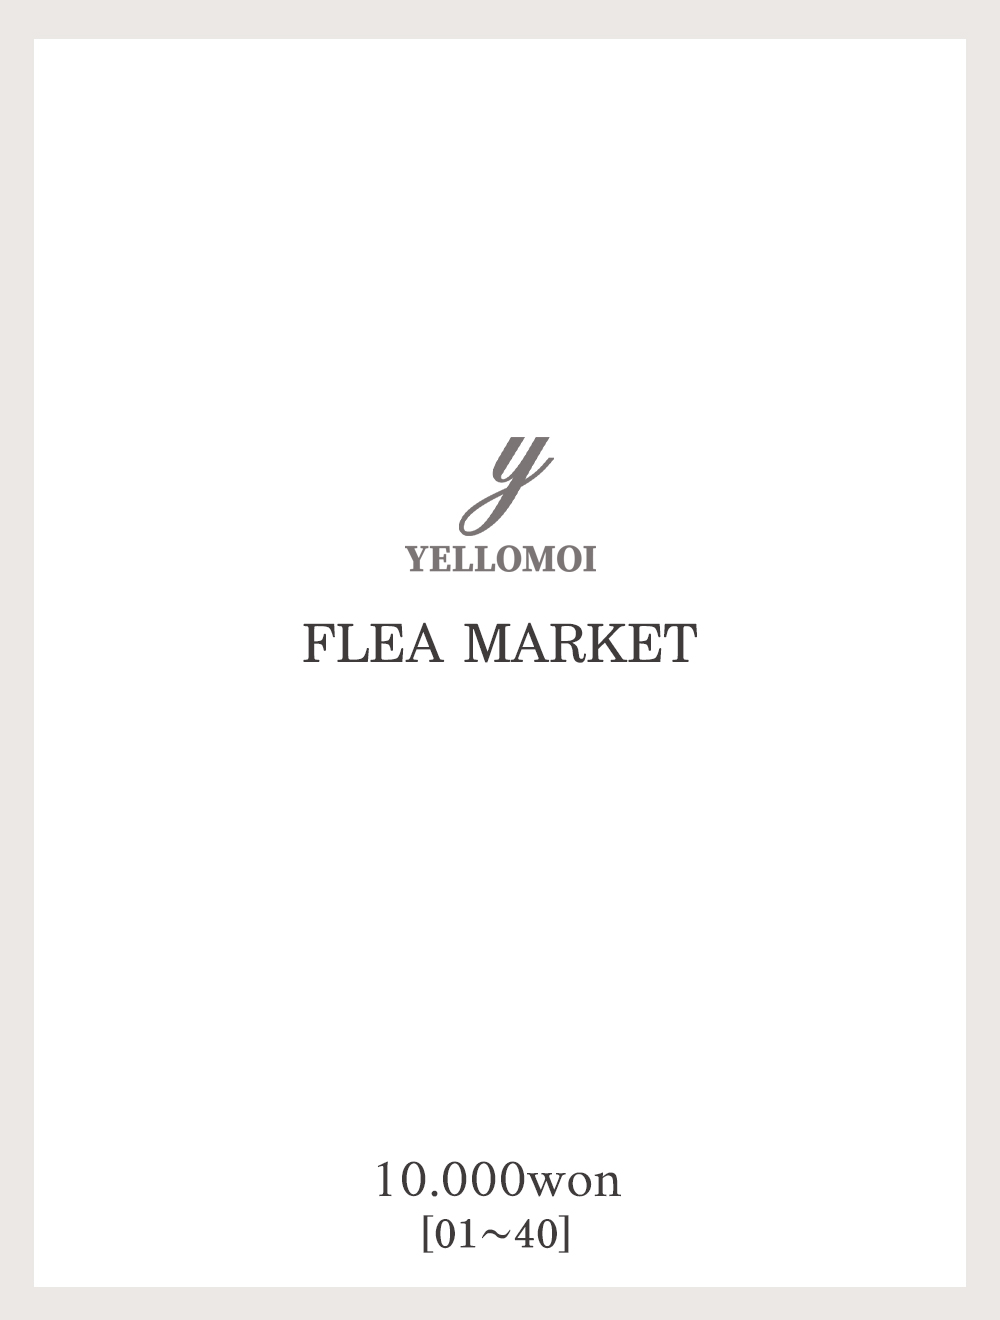 [YELLOMOI]Flea market, 1만원(01-40)